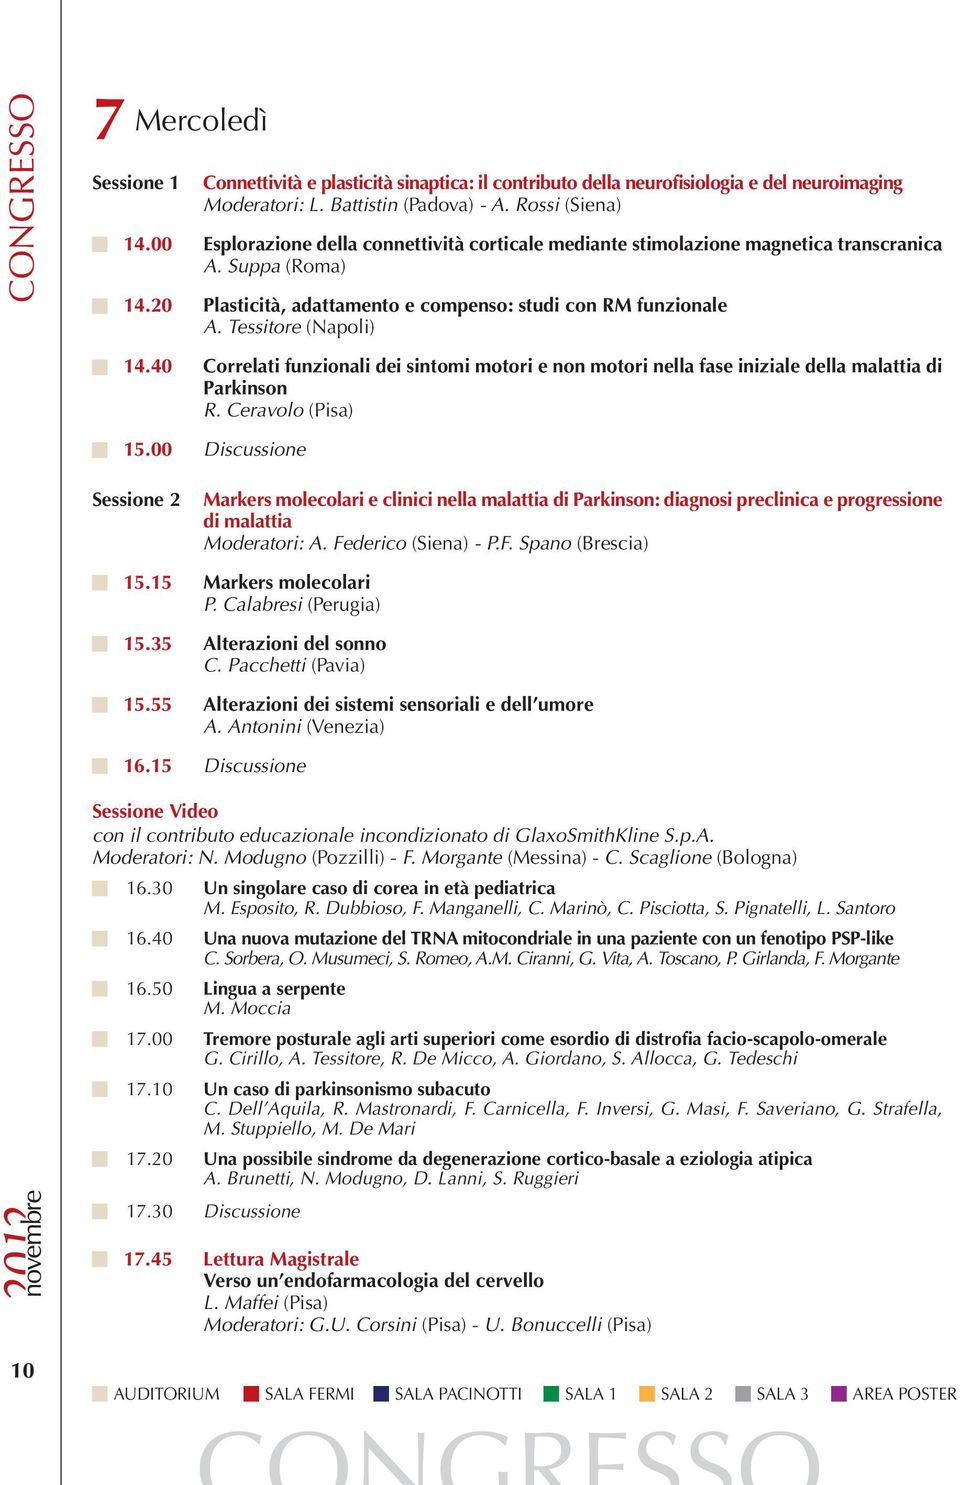 40 Correlati funzionali dei sintomi motori e non motori nella fase iniziale della malattia di Parkinson R. Ceravolo (Pisa) 15.